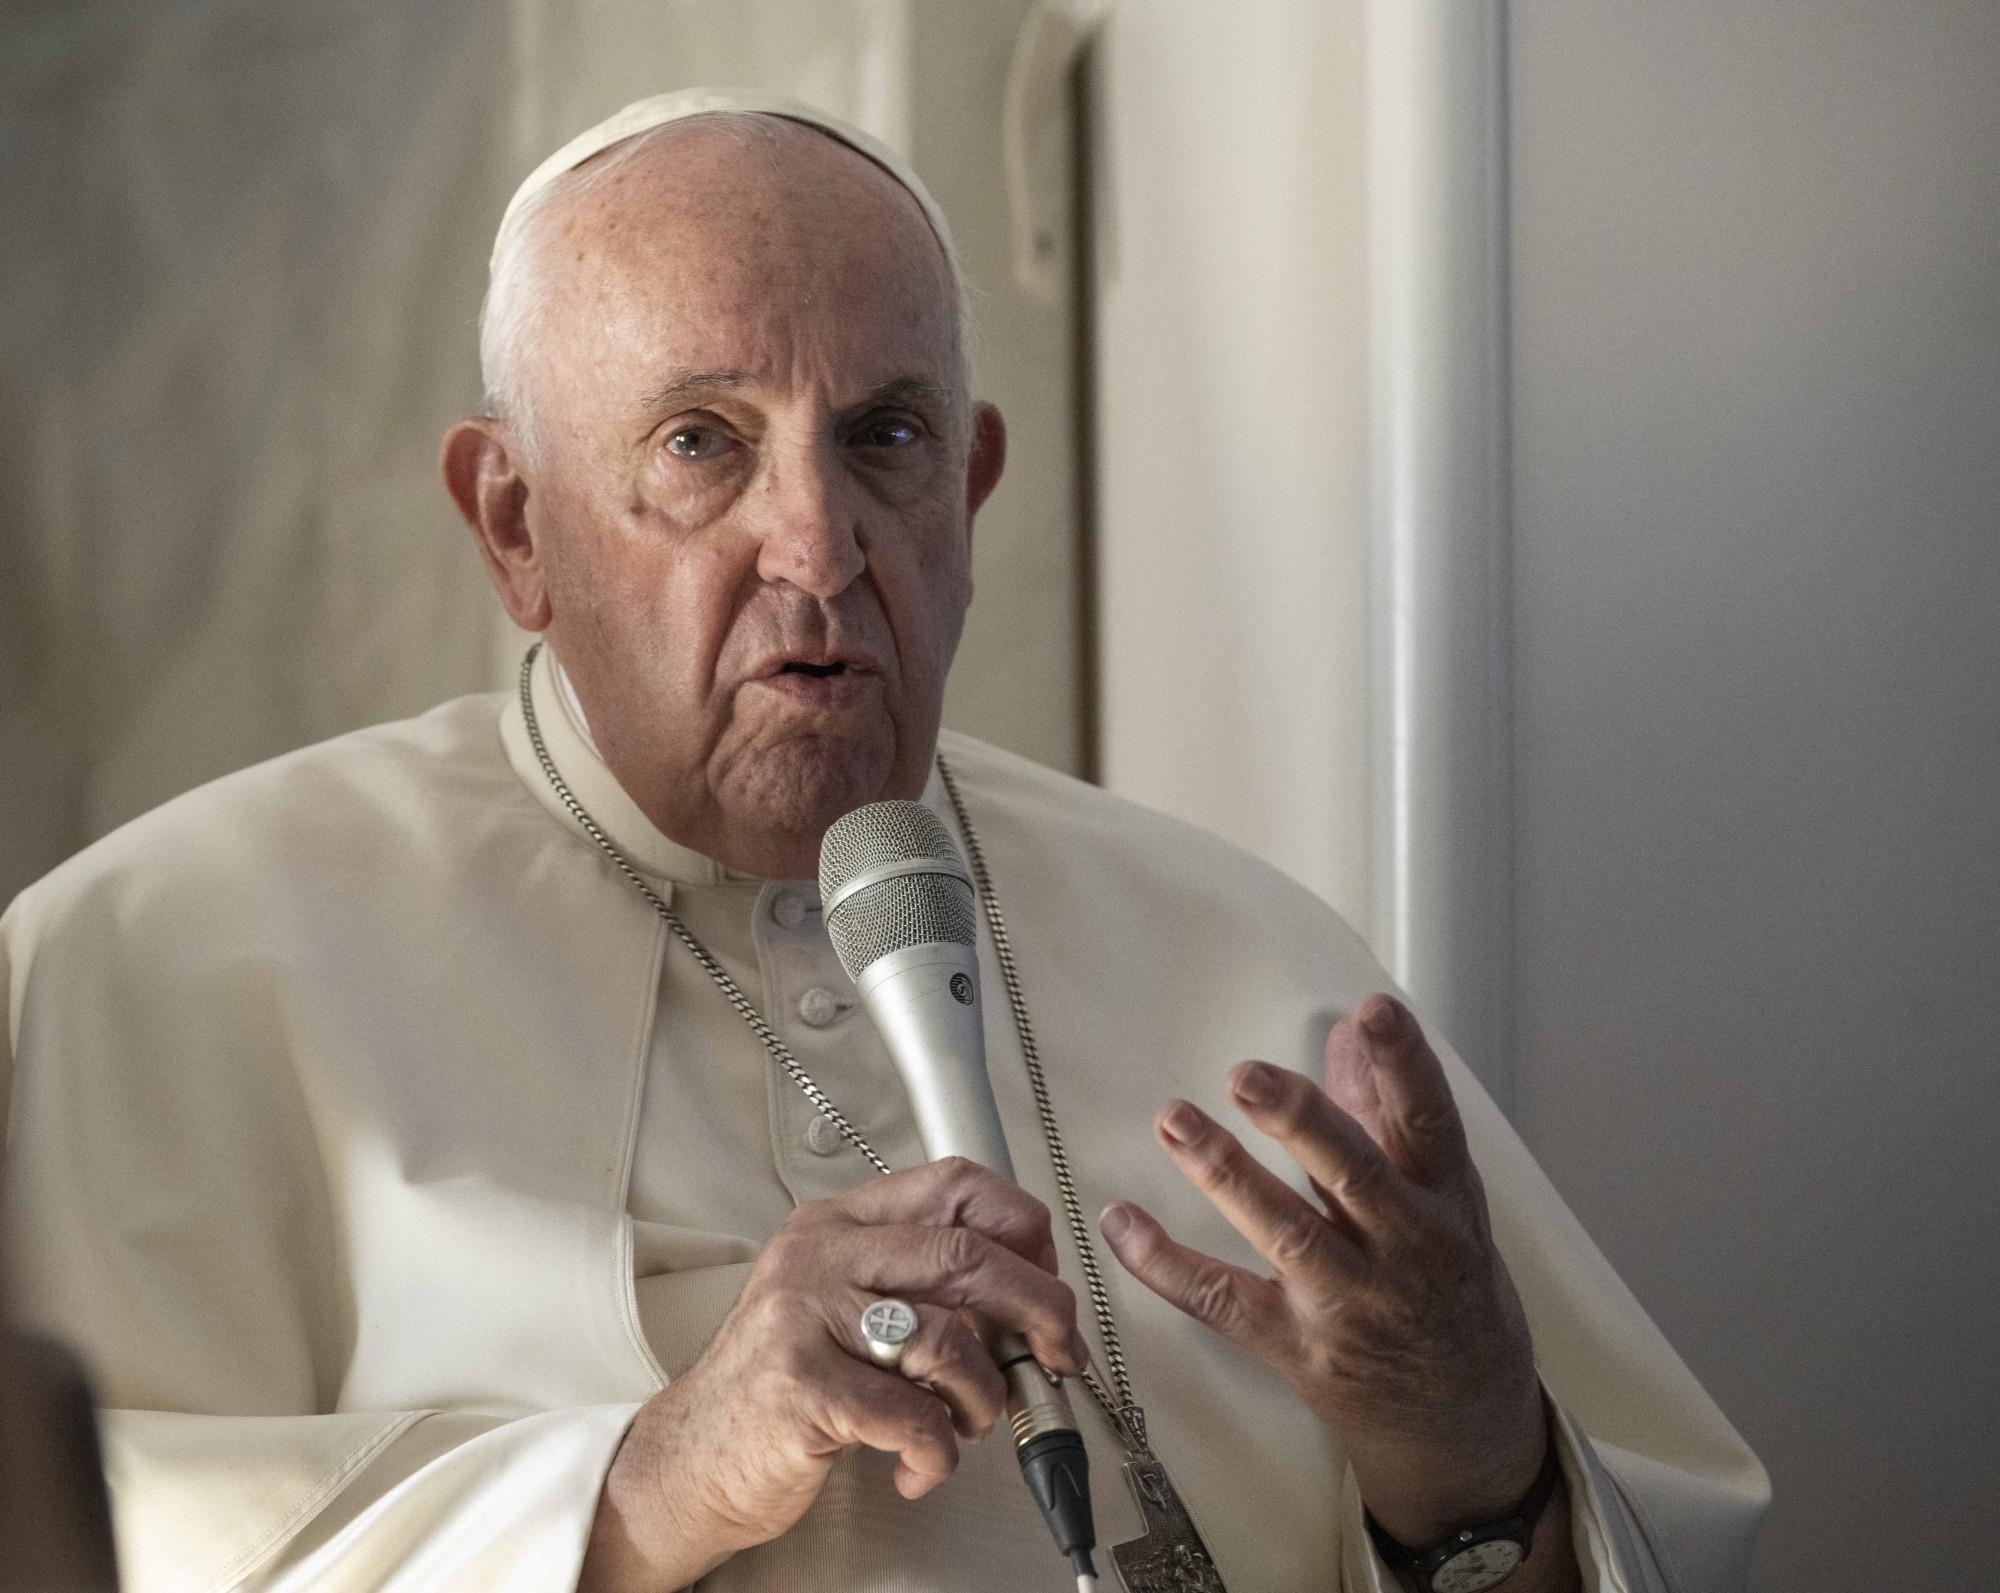 Ferenc pápa tisztázta, hogy miért mondta a homoszexualitásra, hogy bűn